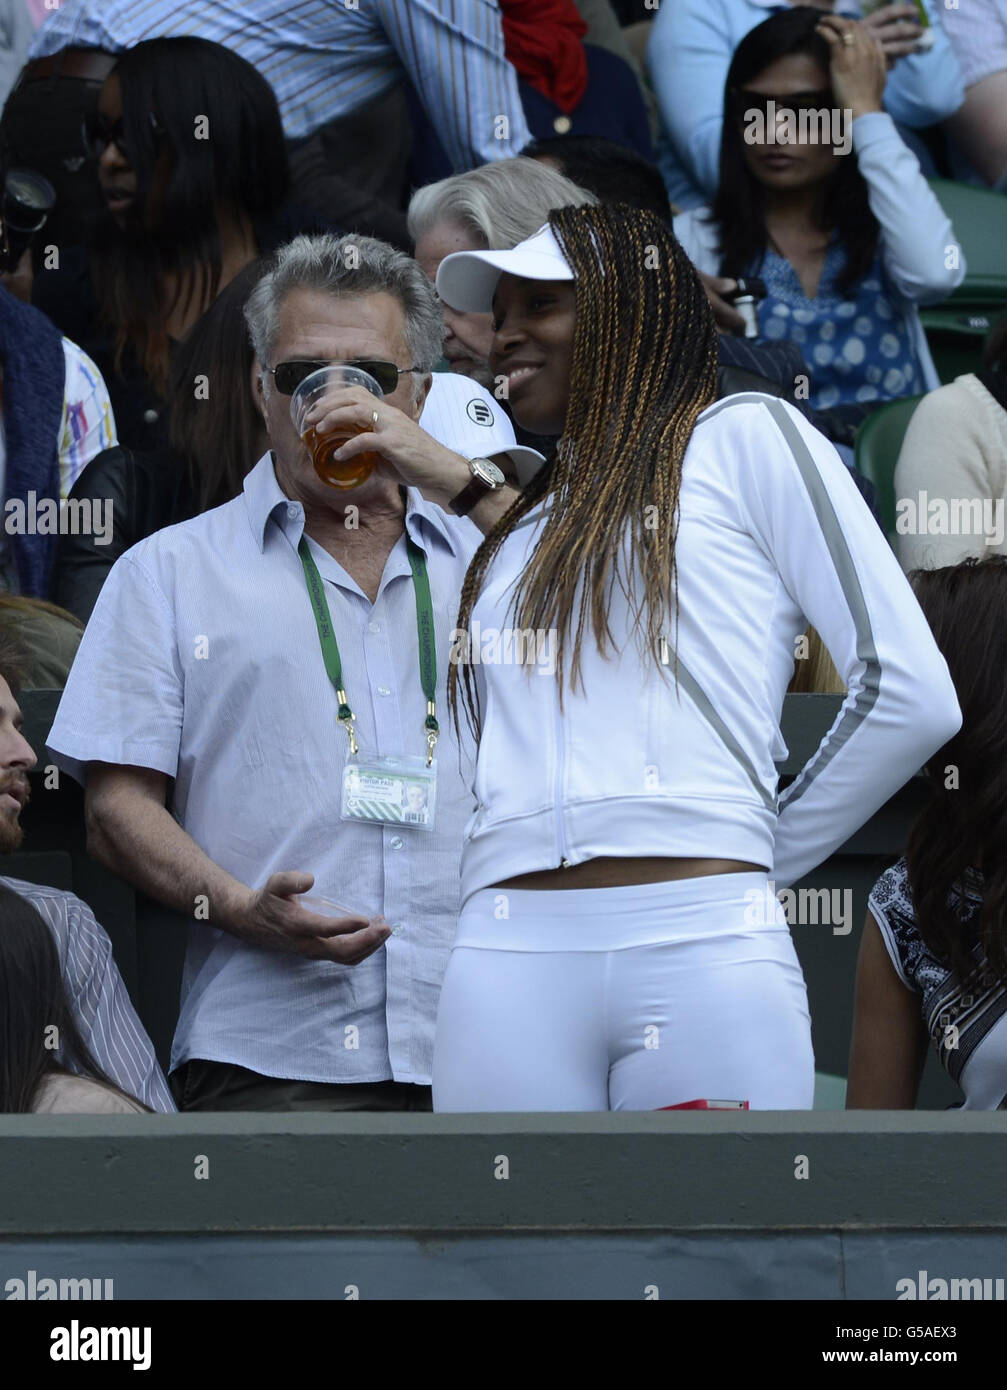 Dustin Hoffman con Venus Williams mentre guardano la Serena Williams degli Stati Uniti sul campo centrale durante il sesto giorno dei Campionati di Wimbledon 2012 all'All England Lawn Tennis Club, Wimbledon. Foto Stock